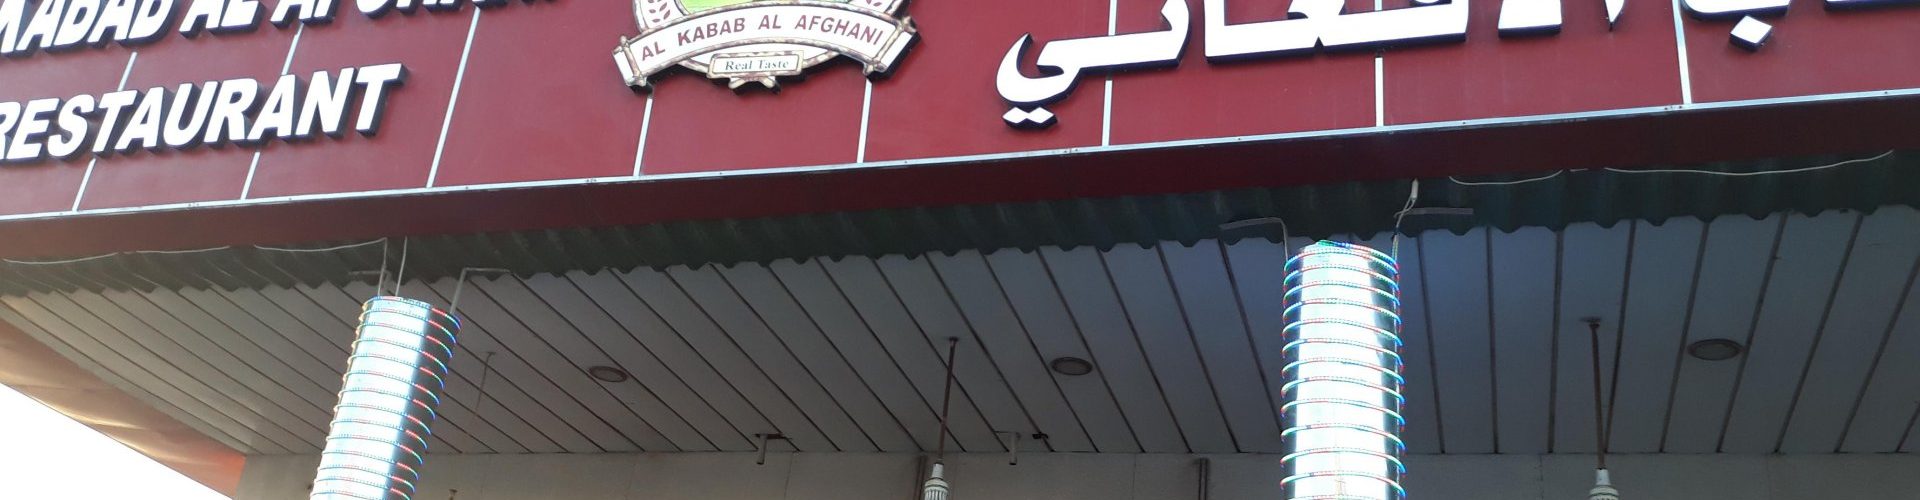 مطعم الكباب الافغاني